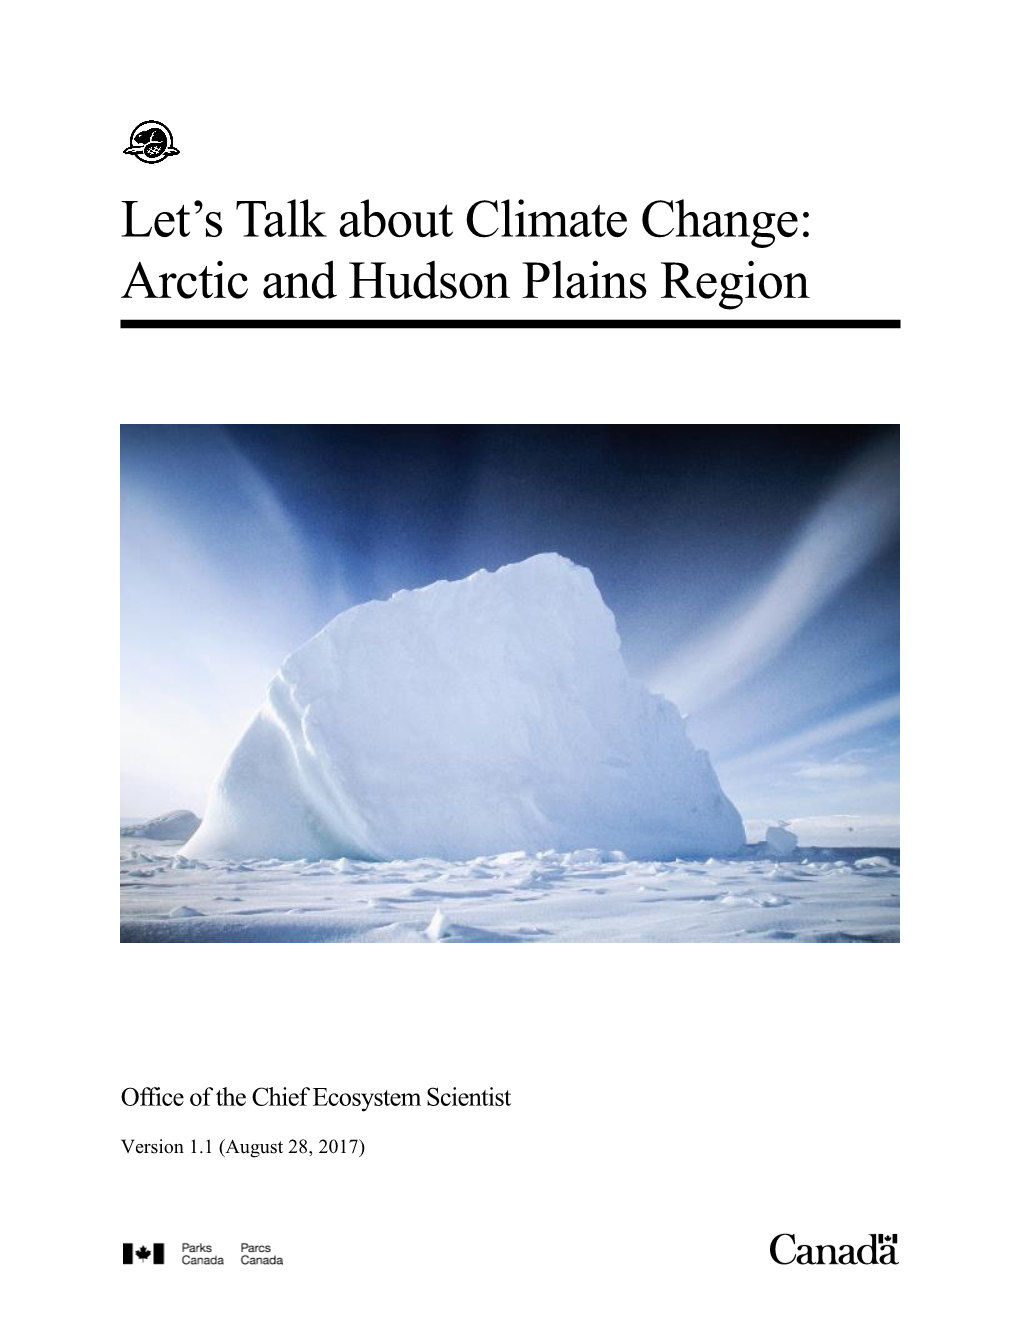 Let's Talk About Climate Change: Arctic and Hudson Plains Region